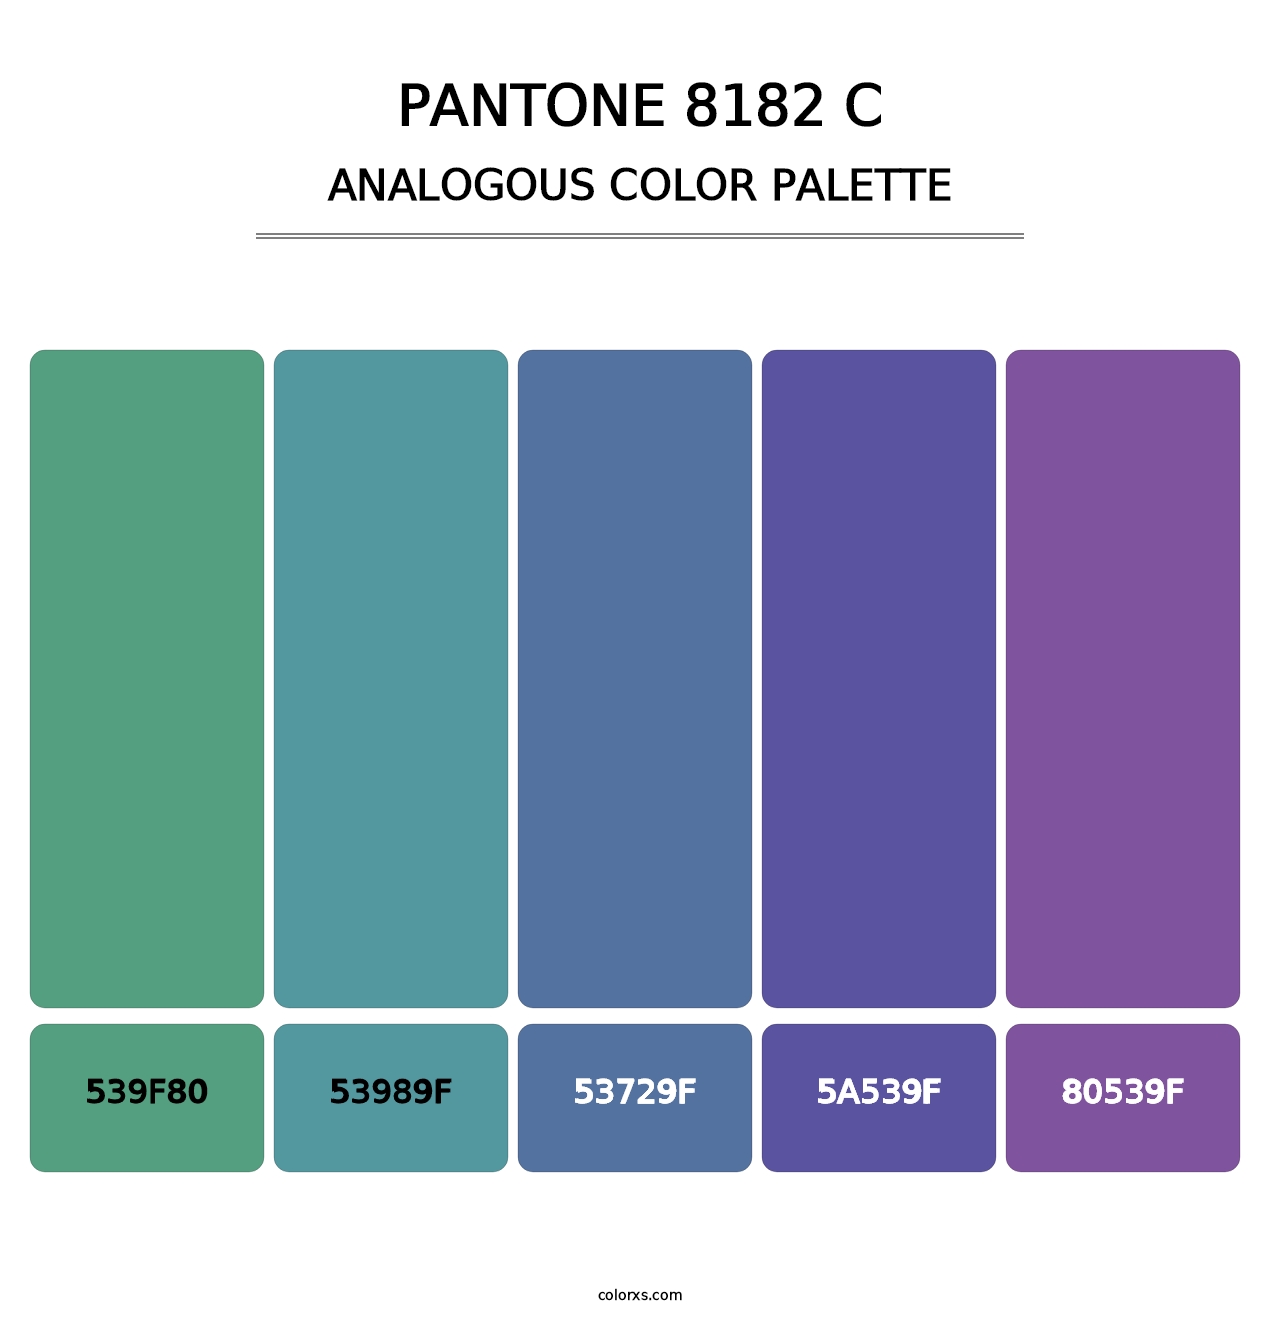 PANTONE 8182 C - Analogous Color Palette